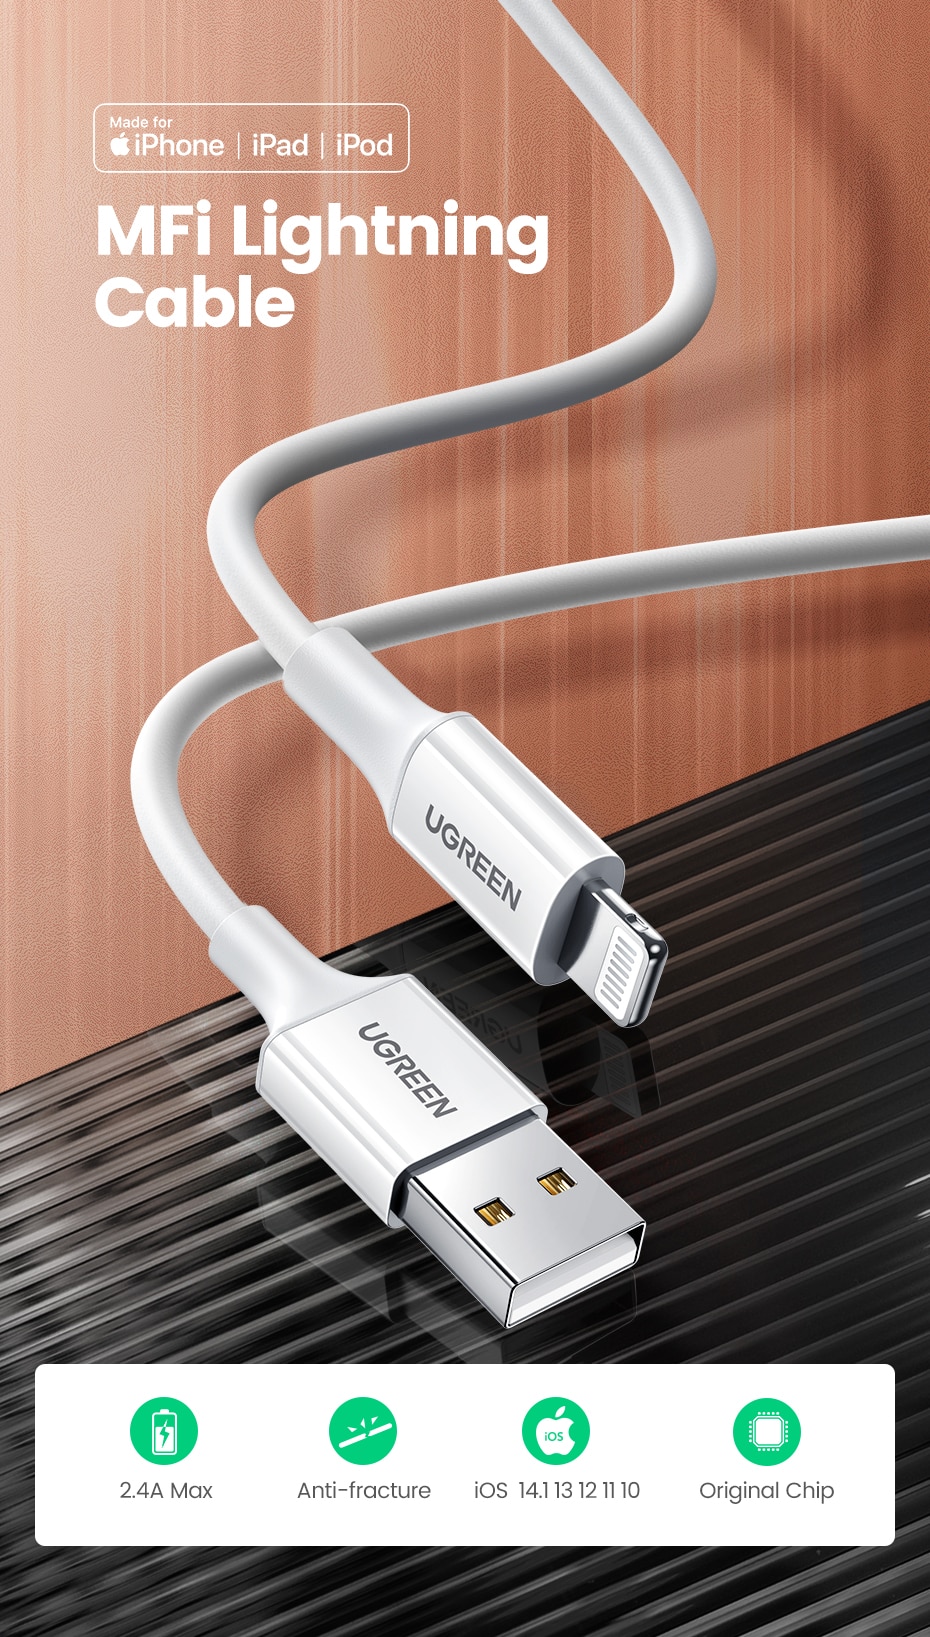 Cable recharge rapide pour iPhone (MFi) chez TMC informatique